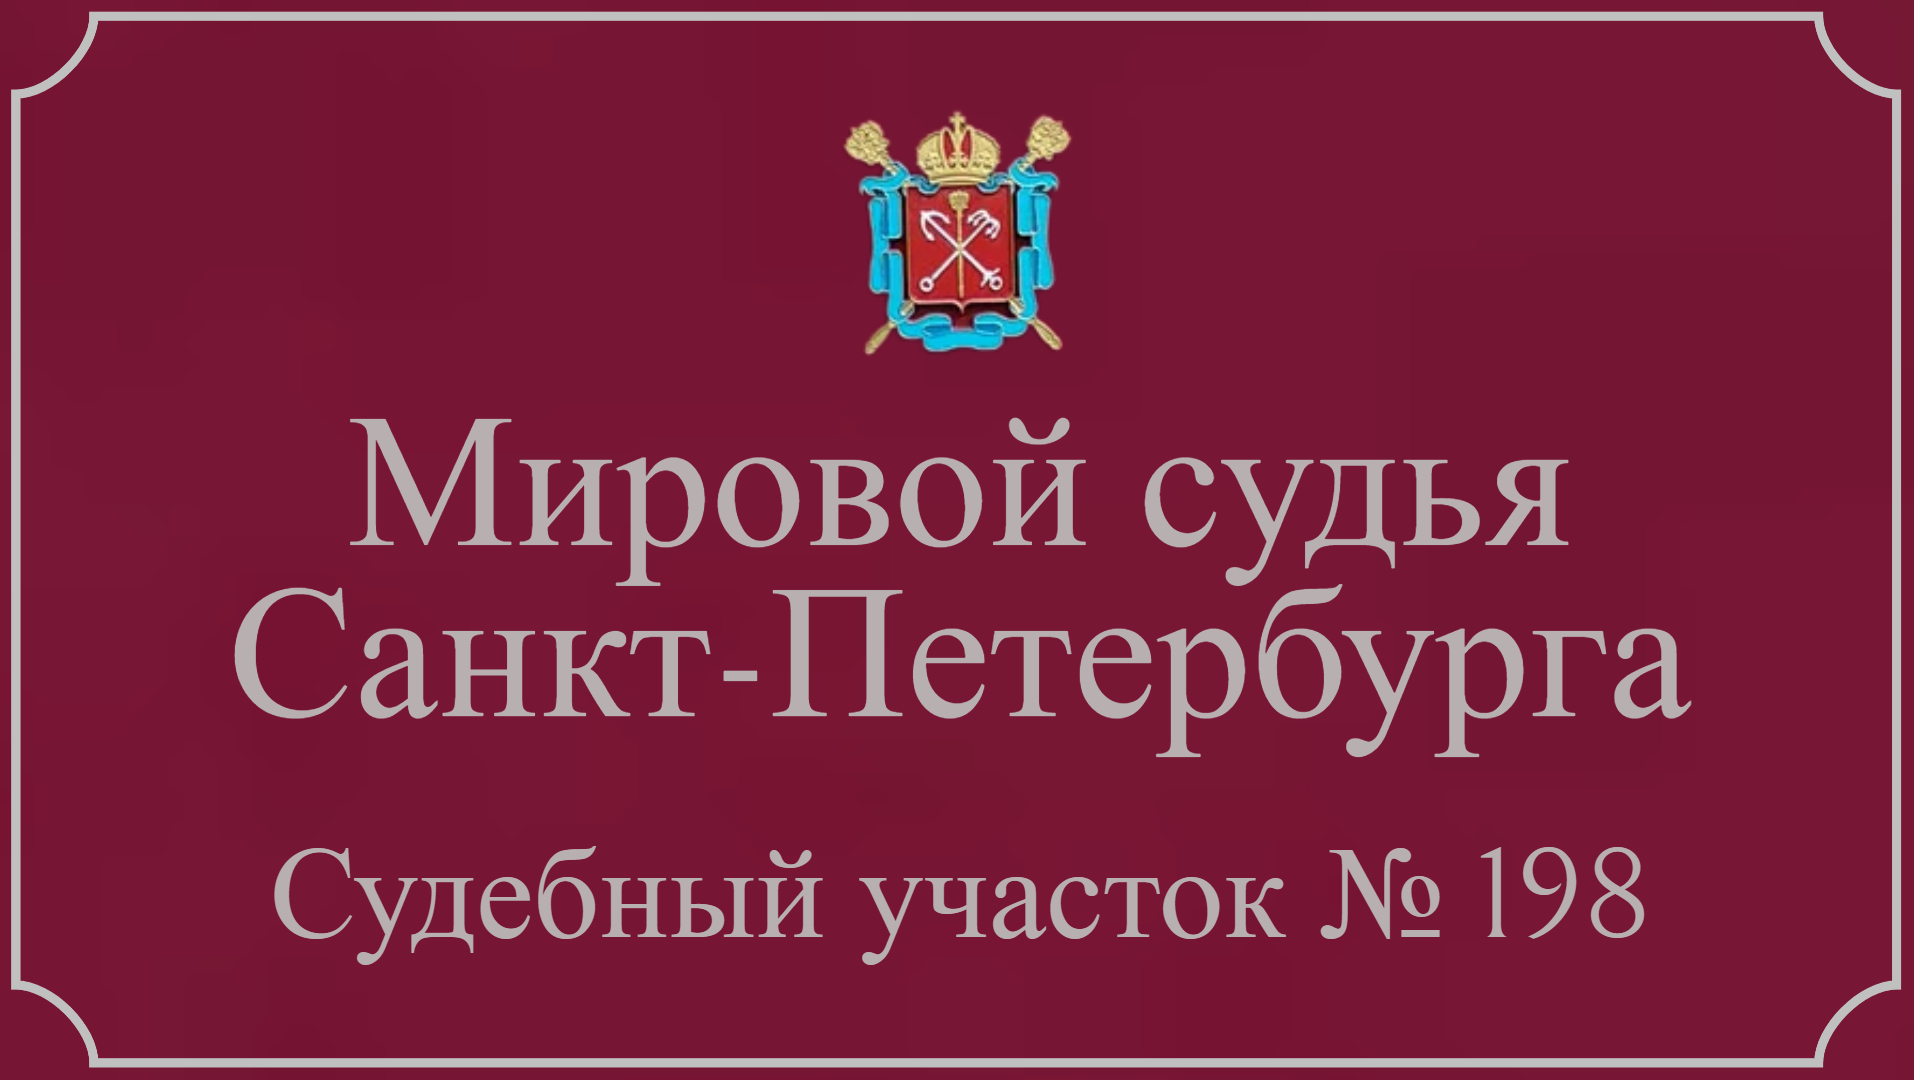 Информация по 198 судебному участку в Санкт-Петербурге.